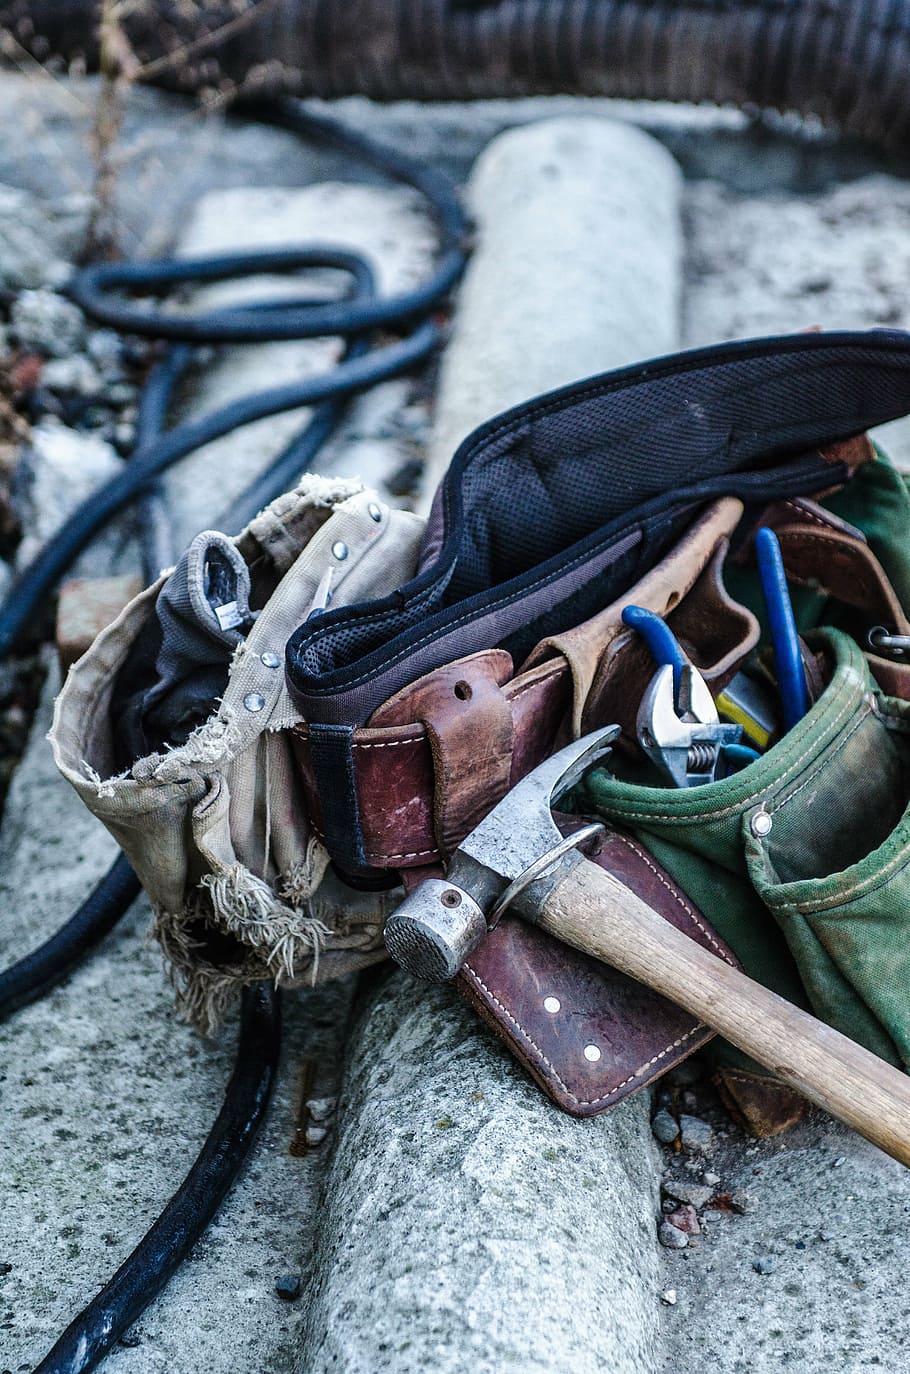 martillo plateado, bolsa de utilidad, marrón, verde, utilidad, cinturón, herramientas, cosas, artículos, trabajo